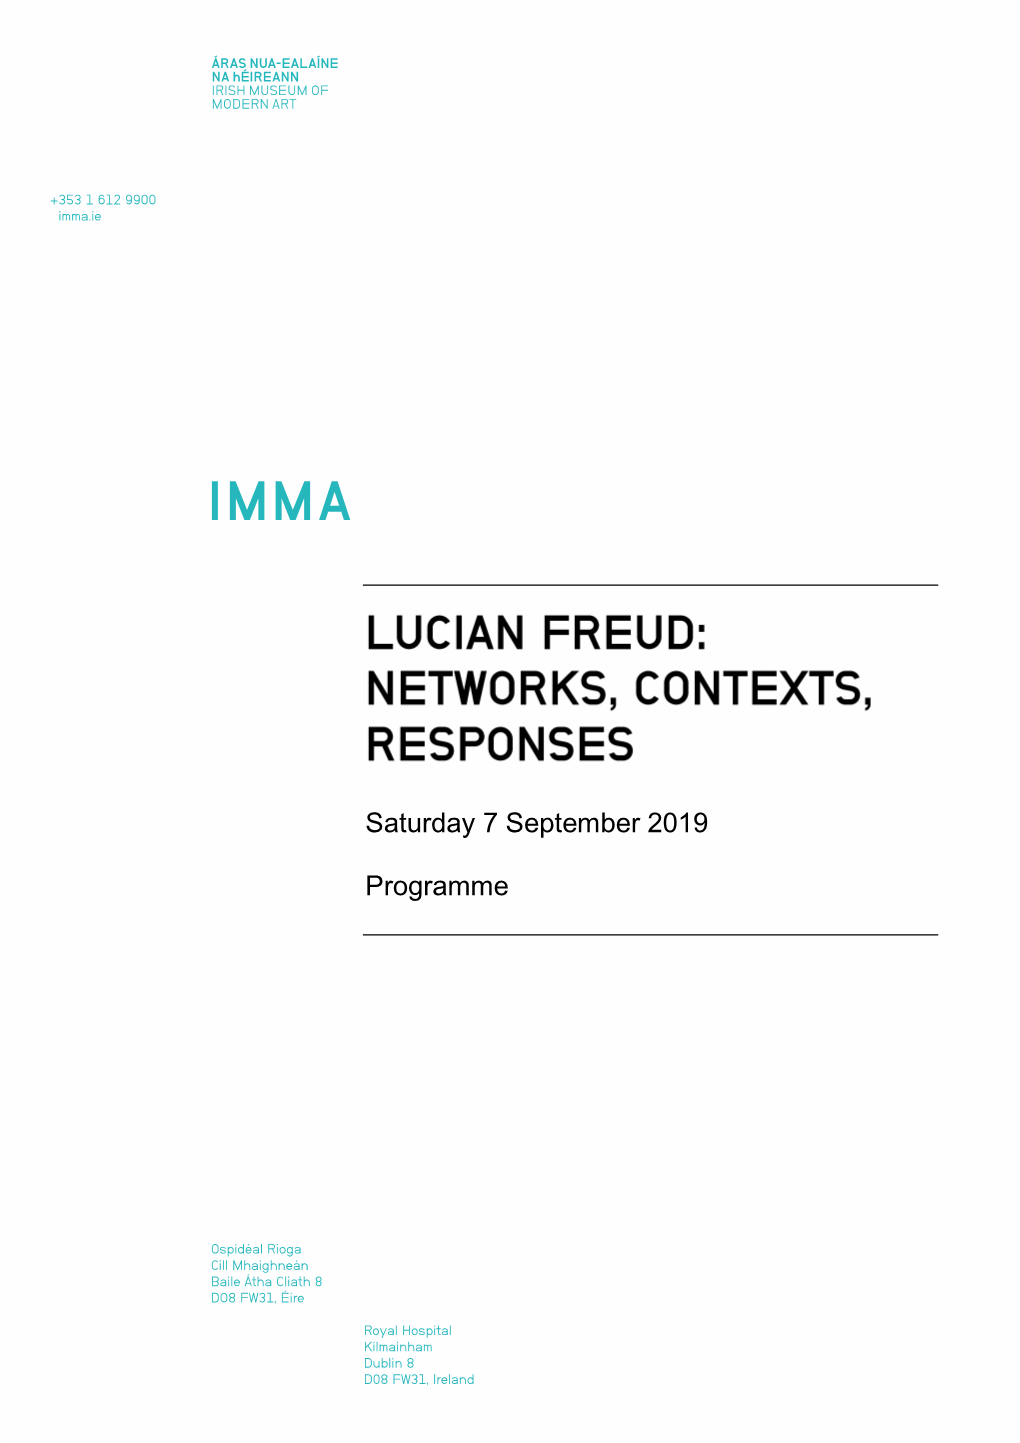 Programme. Lucian Freud Networks